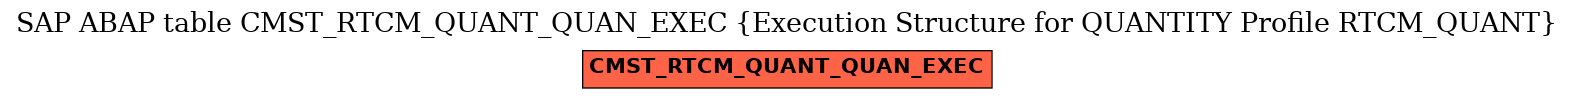 E-R Diagram for table CMST_RTCM_QUANT_QUAN_EXEC (Execution Structure for QUANTITY Profile RTCM_QUANT)